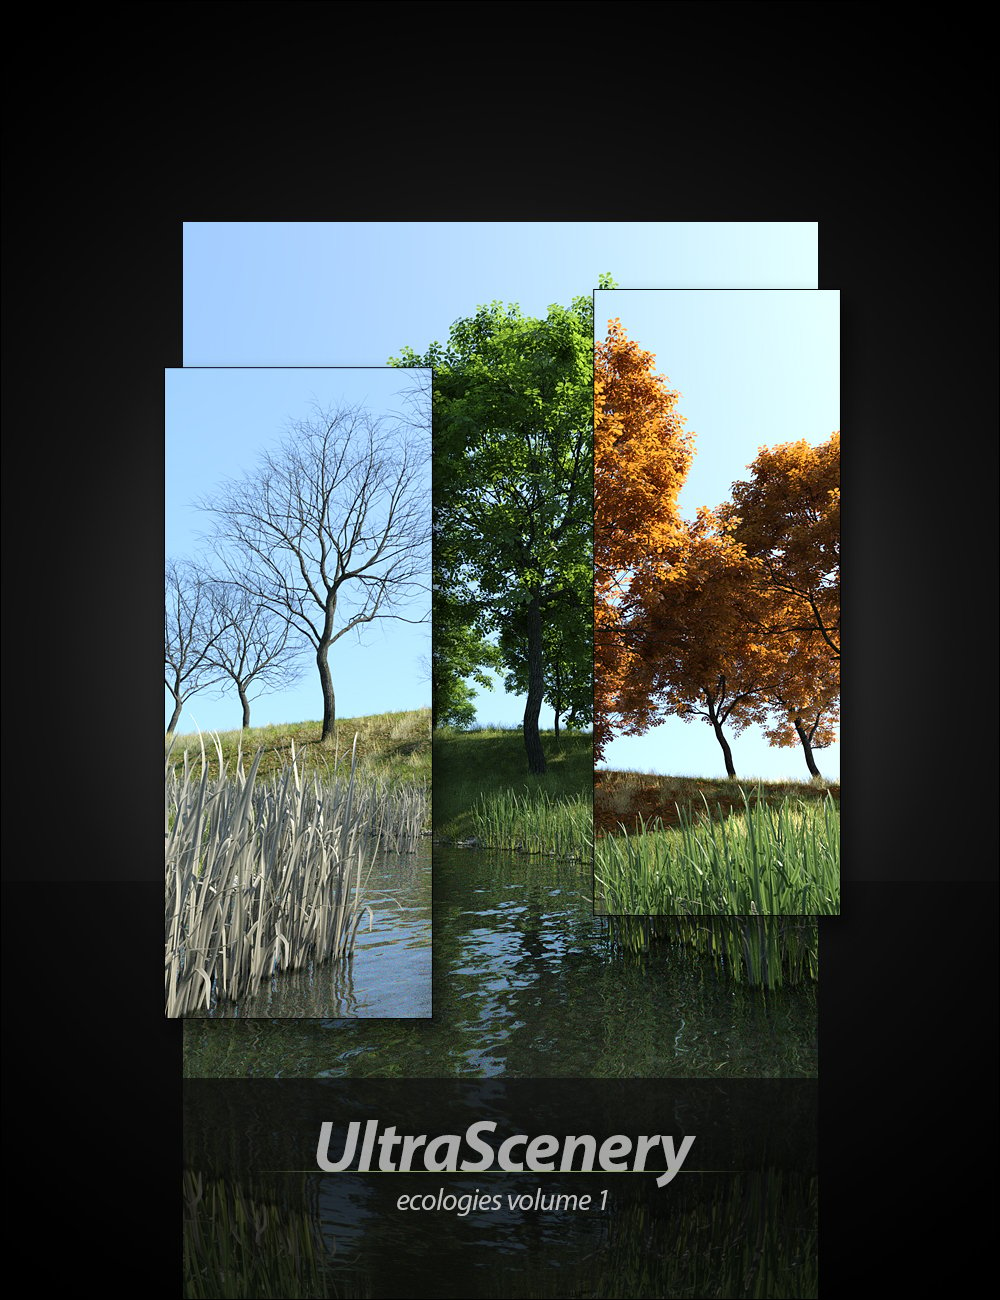 UltraScenery - Ecologies Volume 1 by: HowieFarkes, 3D Models by Daz 3D